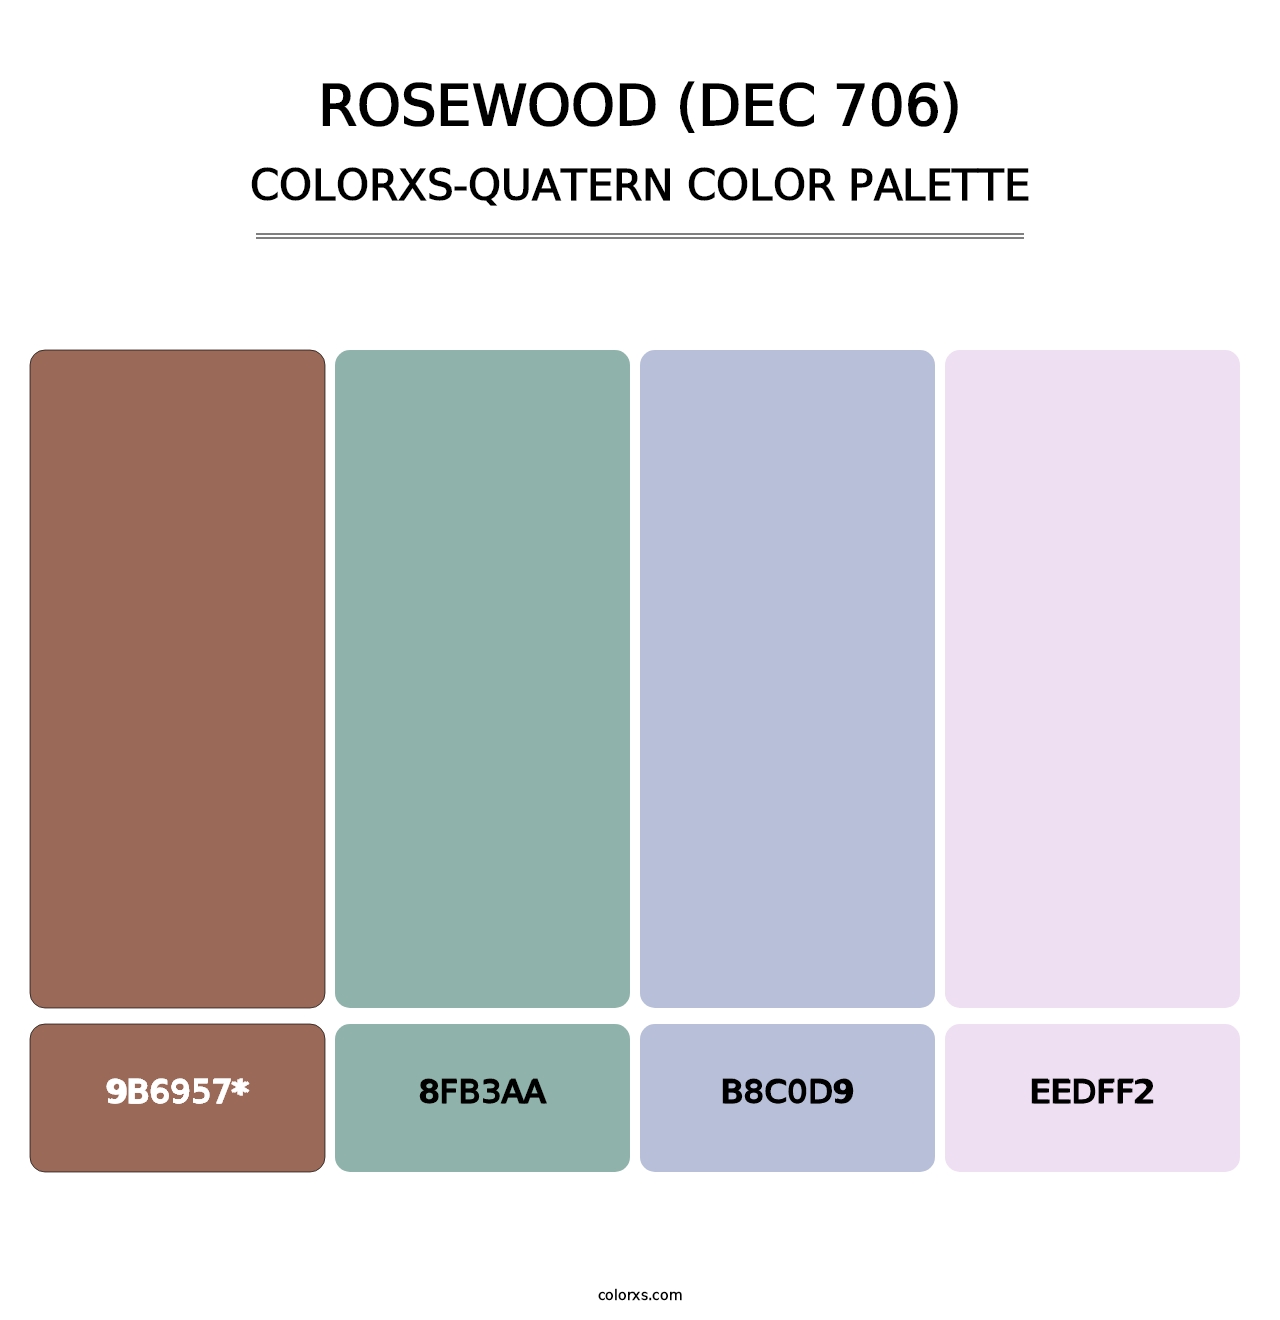 Rosewood (DEC 706) - Colorxs Quatern Palette